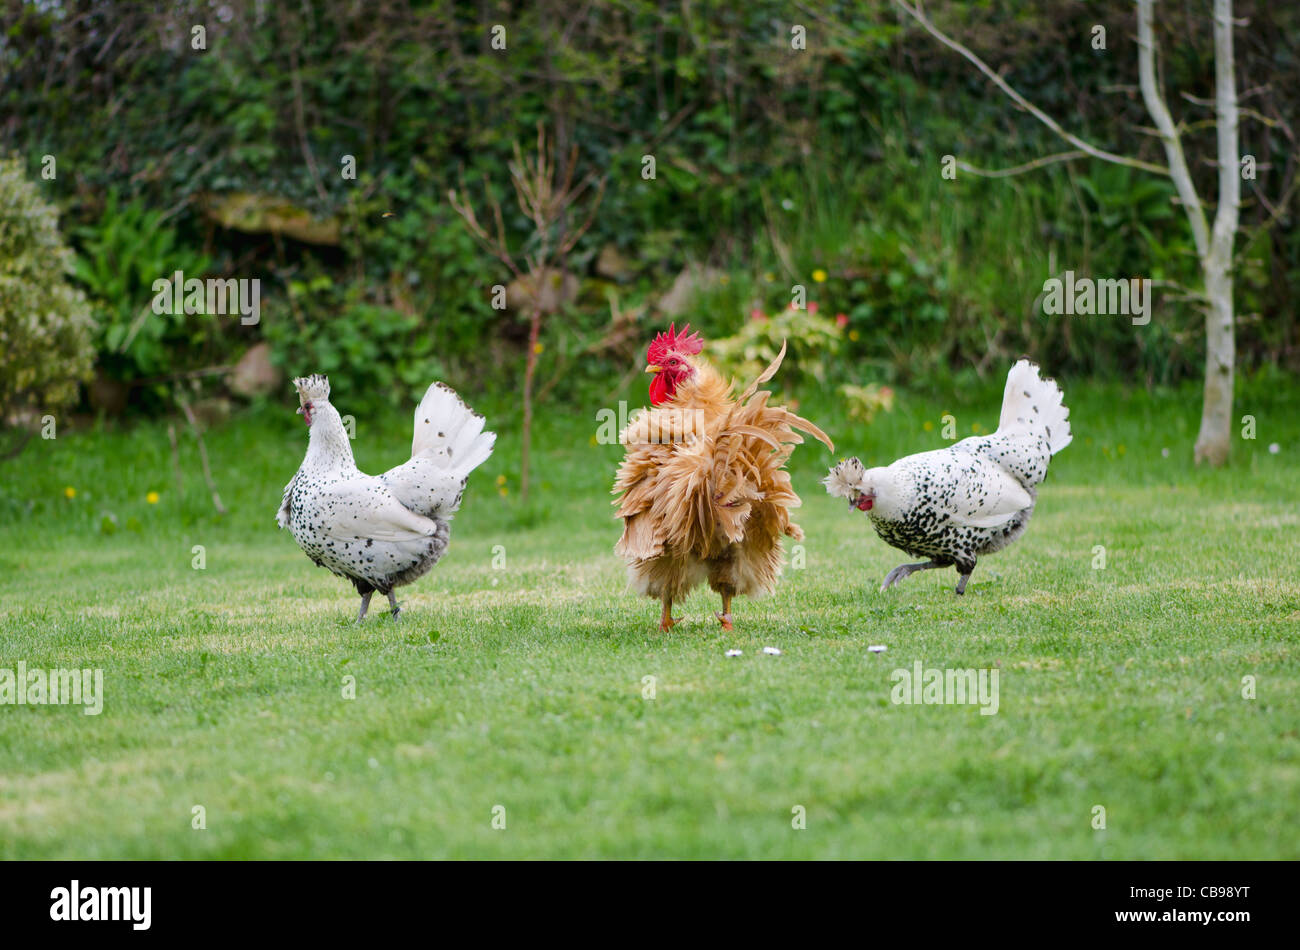 Deux poules mouchetée et un jeune coq se pavanant leur affaire sur une pelouse. Les poules sont des poules Appenzeller. Banque D'Images